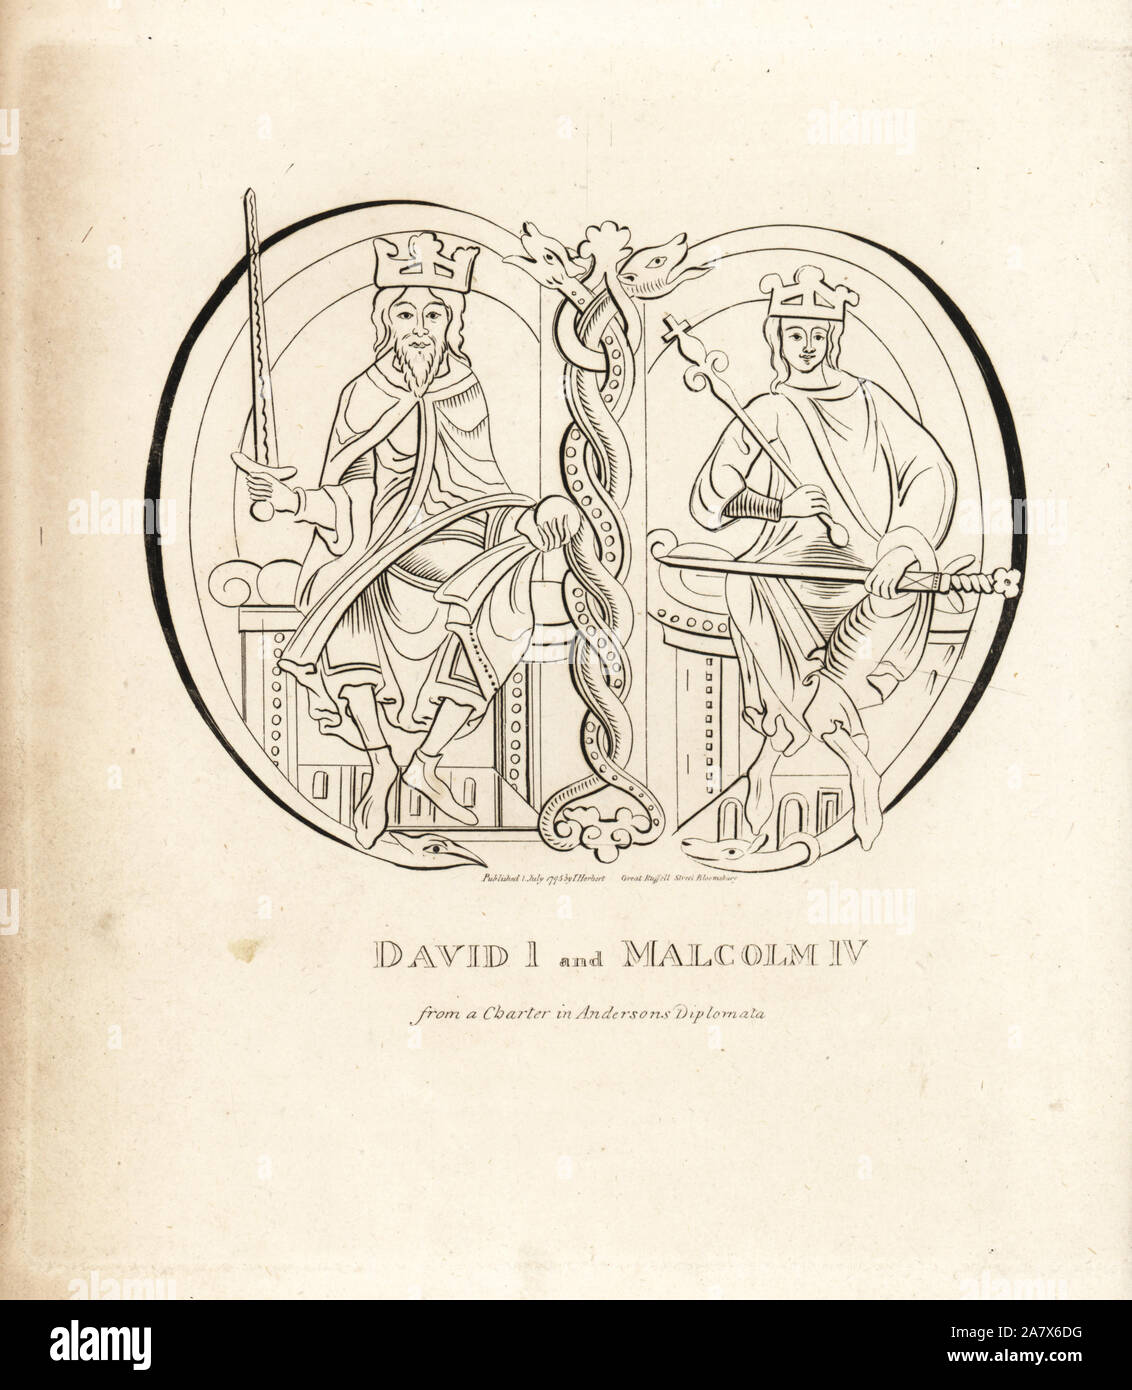 Il re Davide I (1084-1153) e King Malcolm IV di Scozia (1141-1165), da una carta in Anderson's diplomata. Incisione su rame da John Pinkerton's Iconographia Scotica, o ritratti di personaggi illustri della Scozia, Londra, 1797. Foto Stock